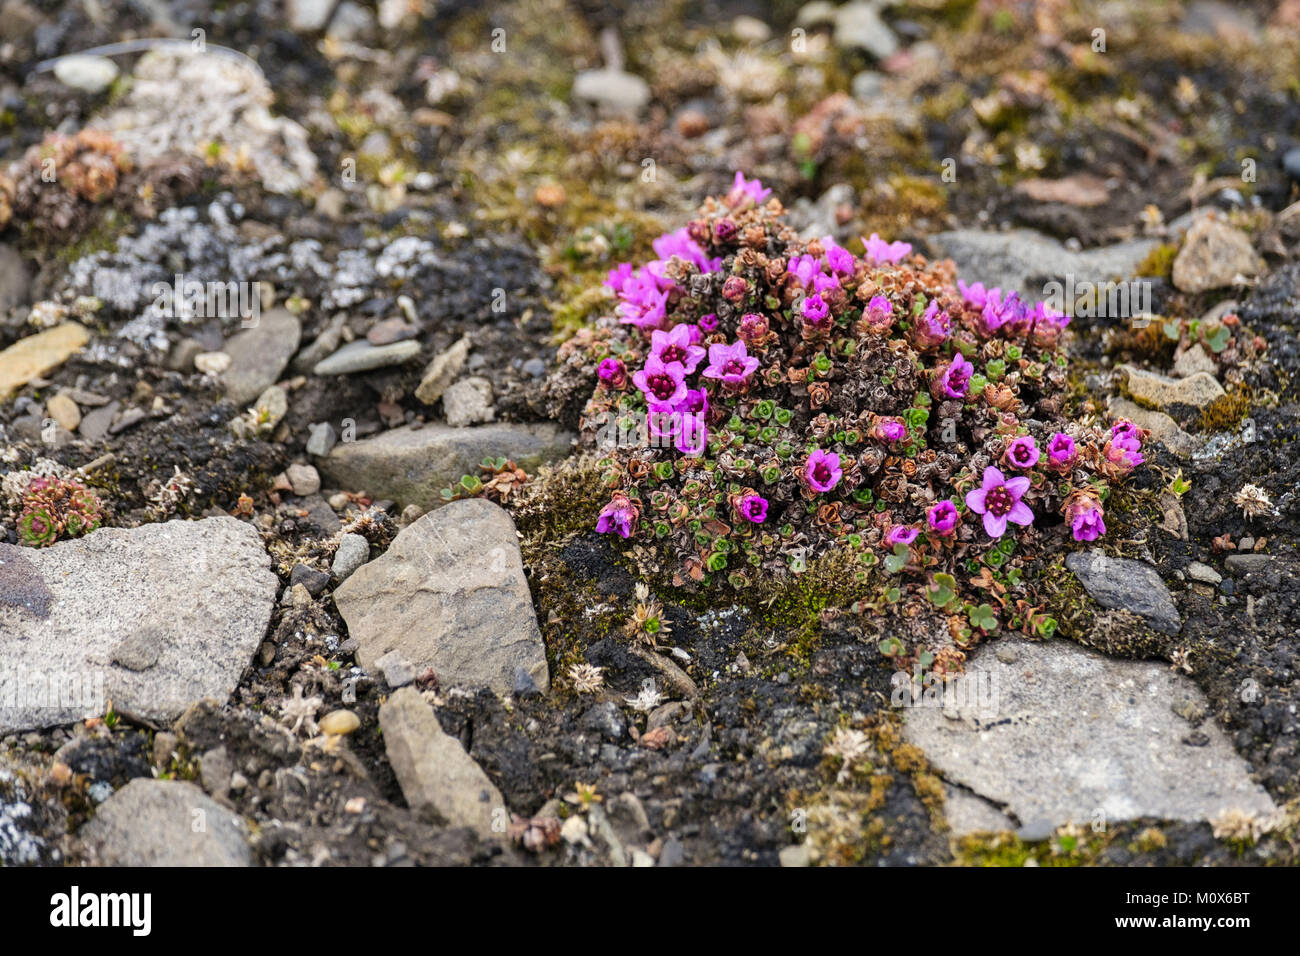 Las saxífragas rojo púrpura o las saxífragas rojo de montaña (Saxifraga oppositifolia) flores silvestres floreciendo en el suelo pedregoso en hábitat de la tundra. Spitsbergen Svalbard Noruega Foto de stock